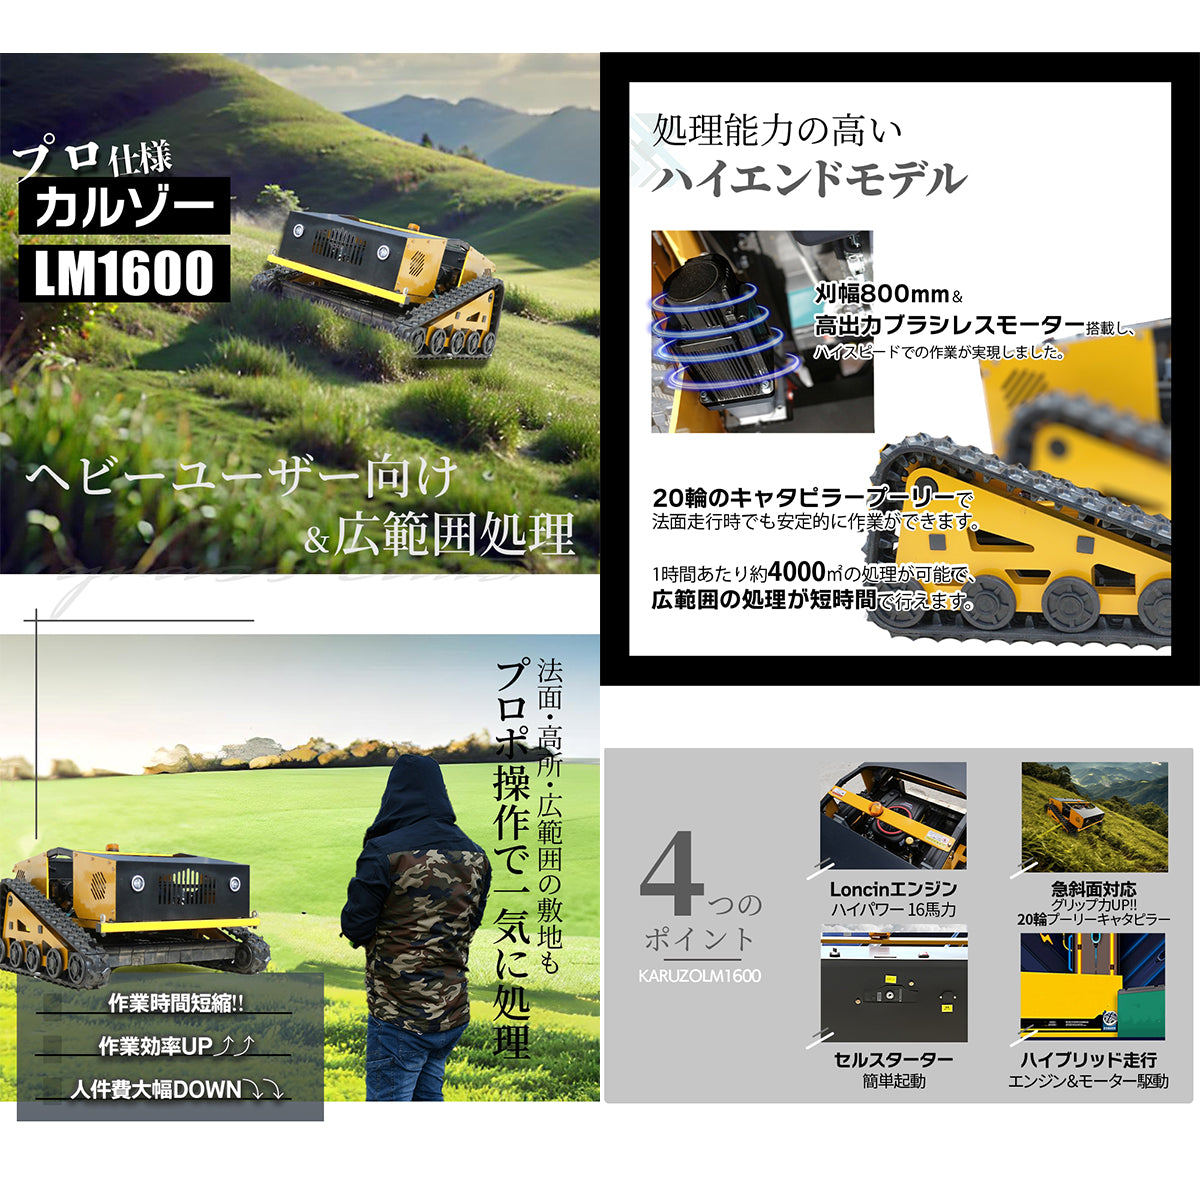 【5/31まで30%OFF】 カルゾー LM1600 ラジコン草刈機